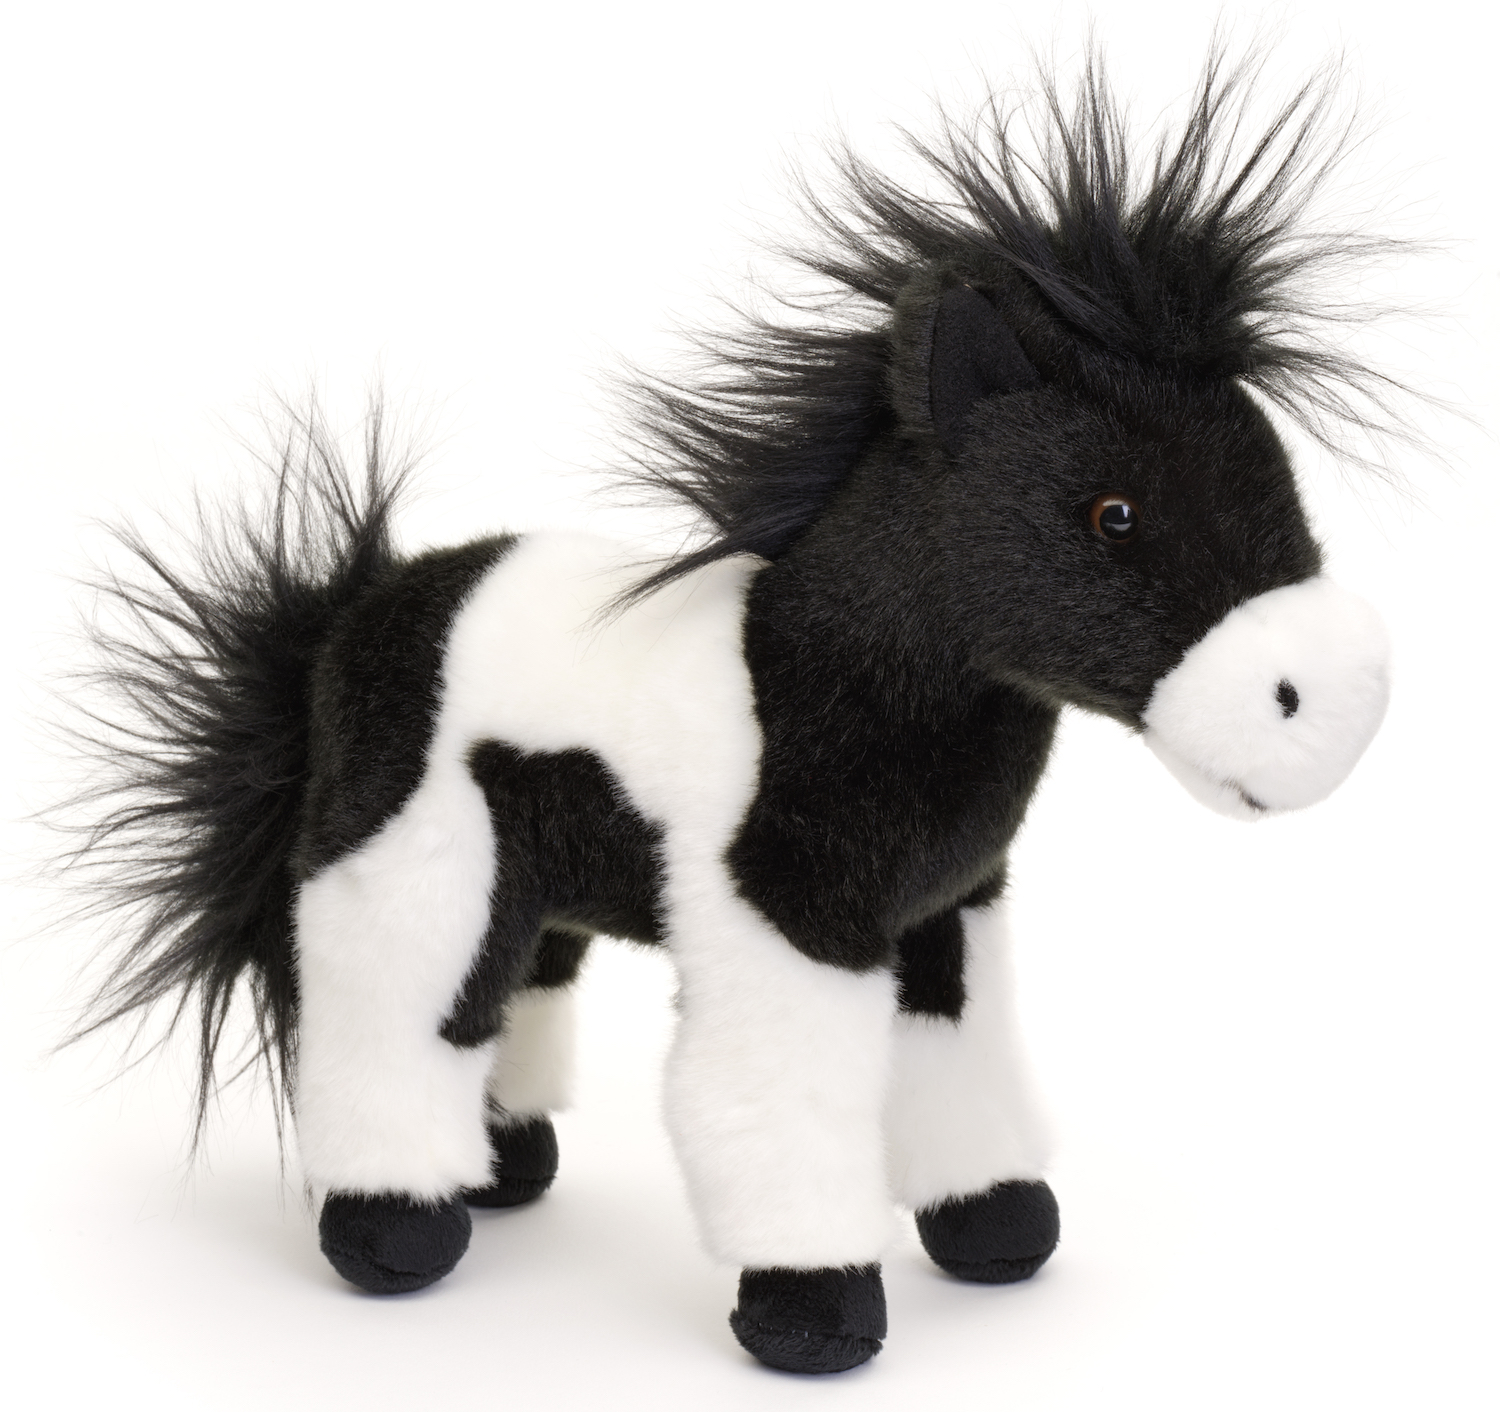 Pferd schwarz-weiß, stehend - 23 cm (Höhe) - Plüschtier, Kuscheltier